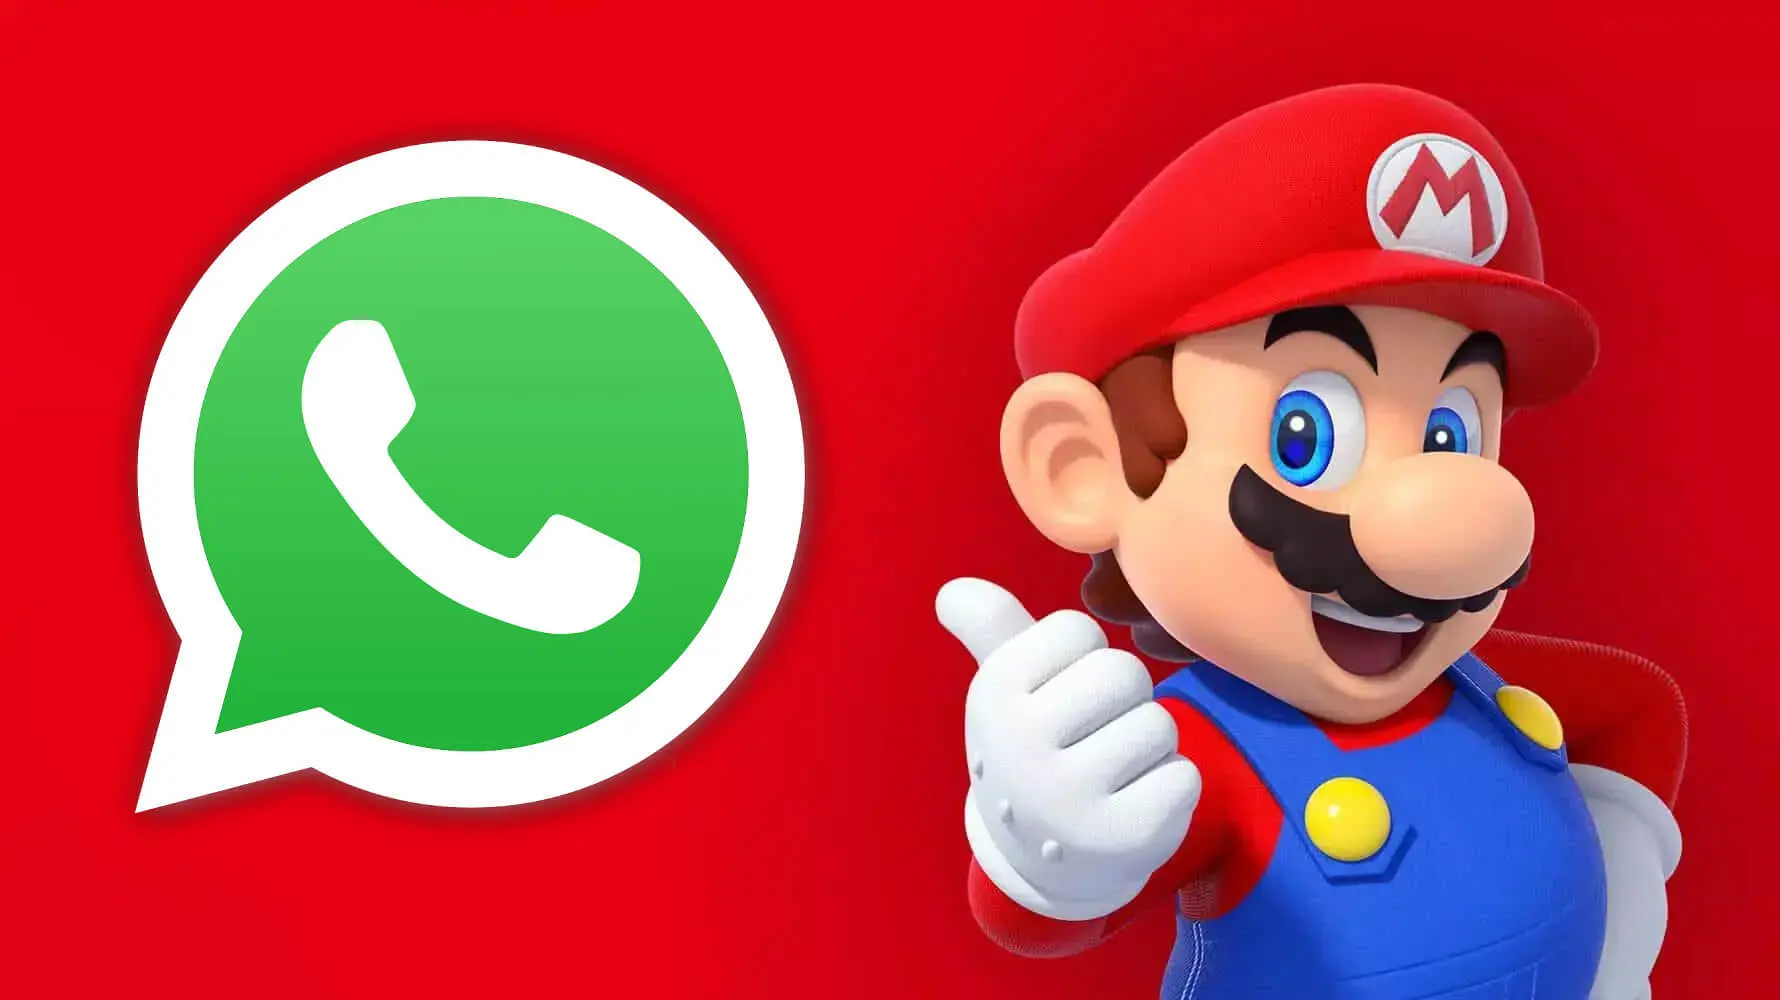 Attiva la modalità Super Mario Bros su WhatsApp in 4 semplici passaggi!